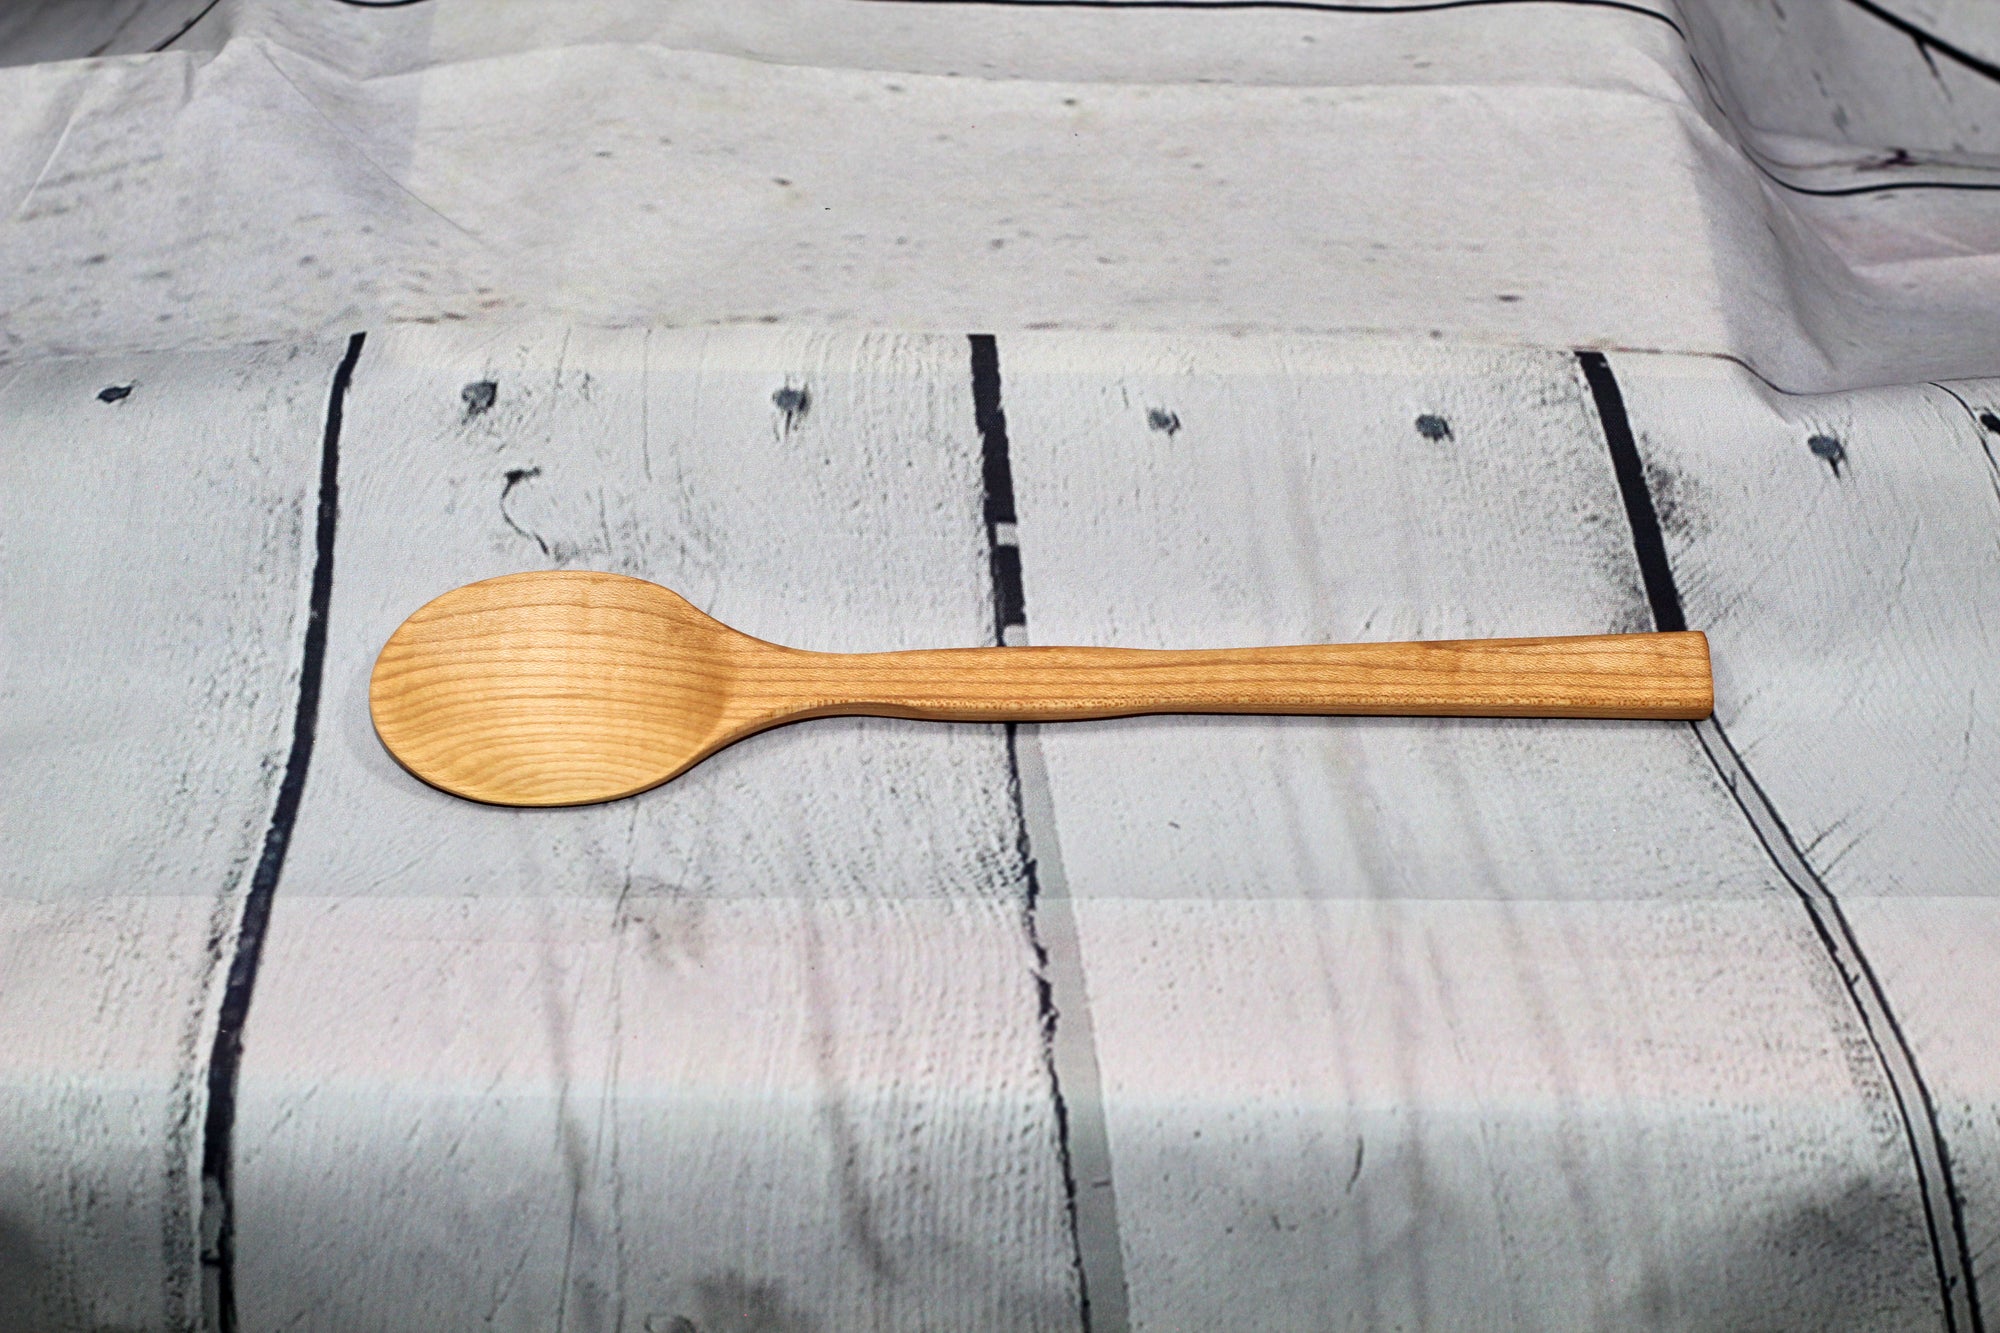 Spoon (maple)